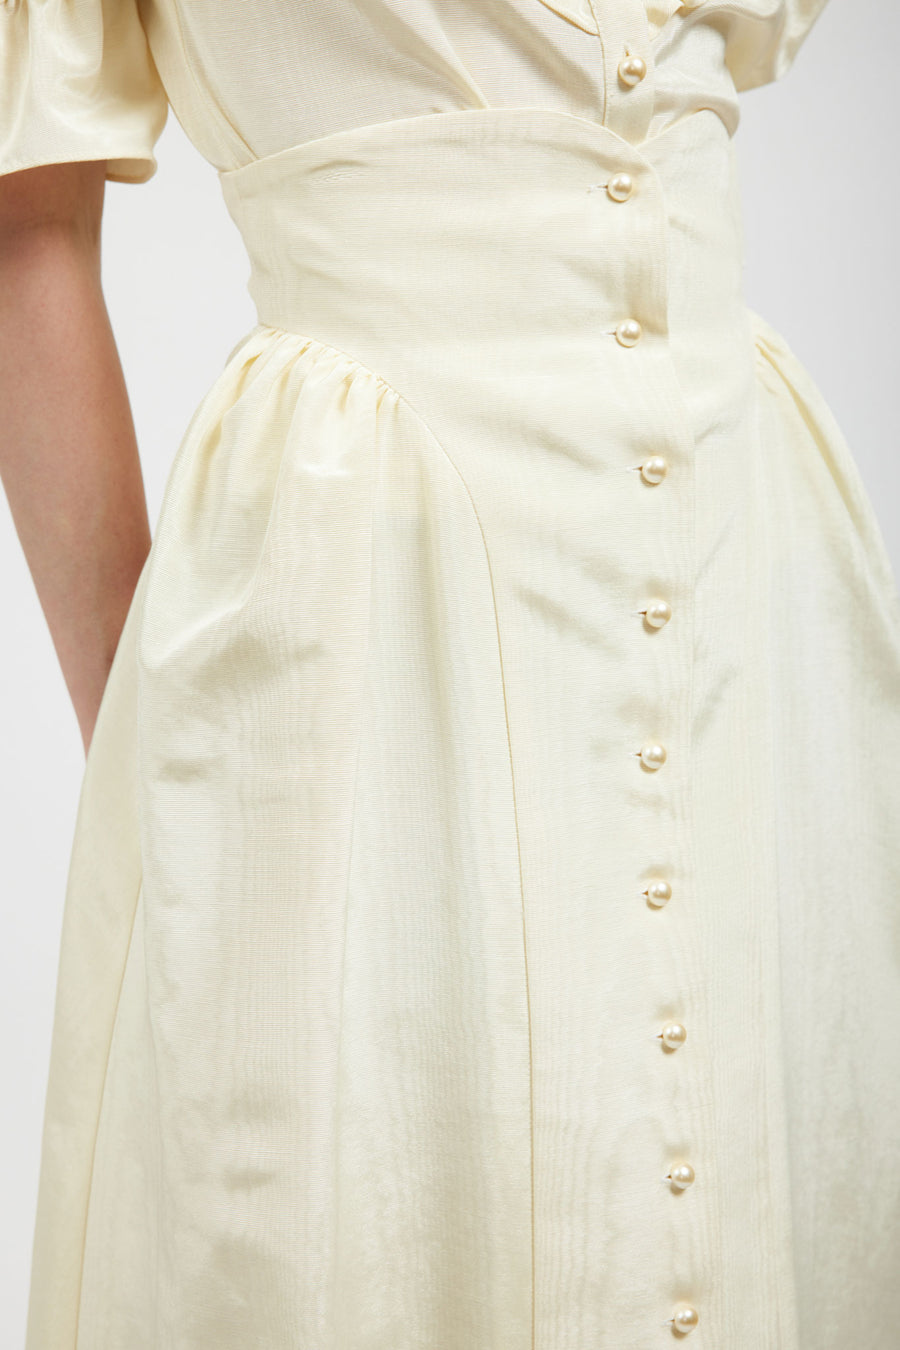 BATSHEVA - Bella Skirt in Cream Moiré